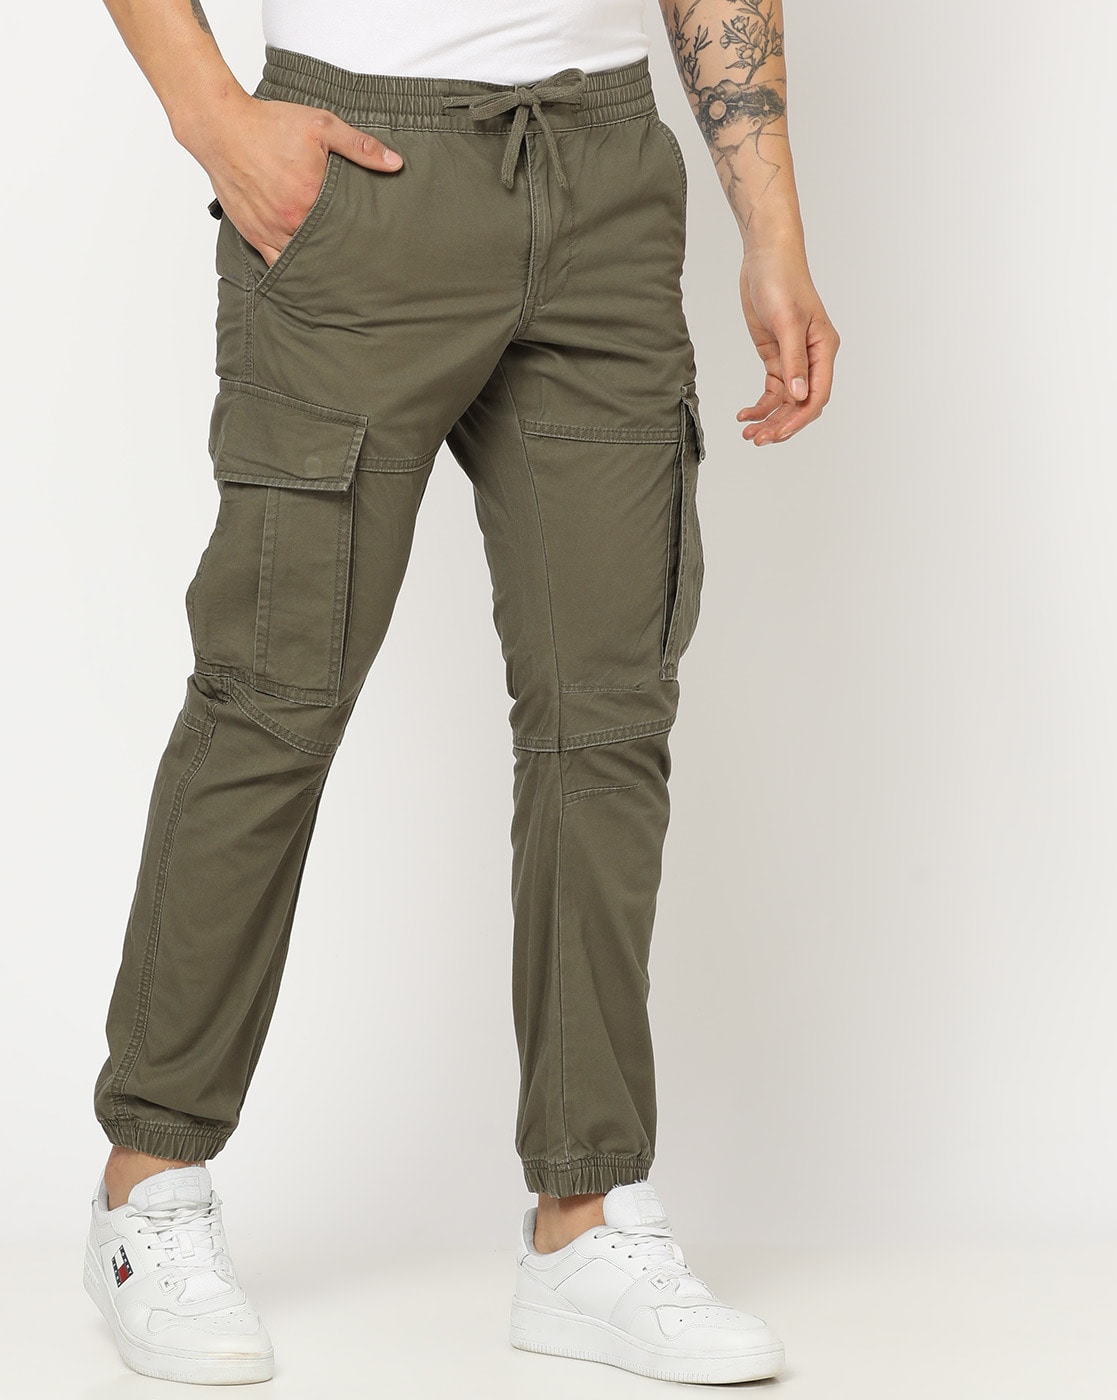 Skinny Fit Cargo Pants - Dark khaki green - Men